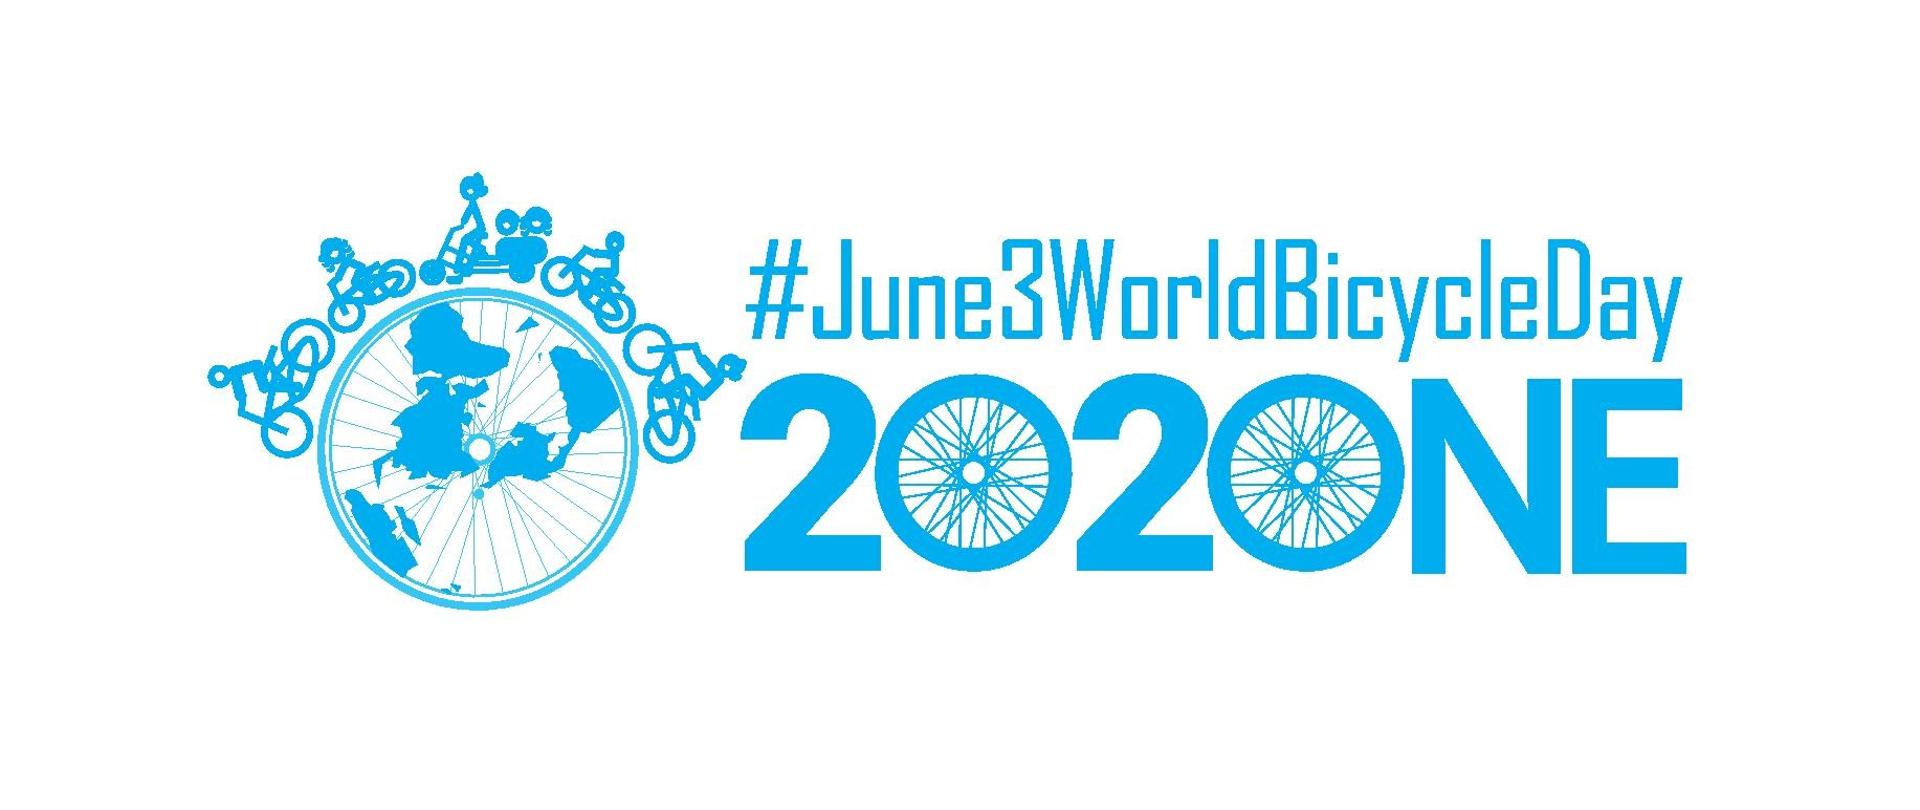 Światowy Dzień Roweru 2021 logo